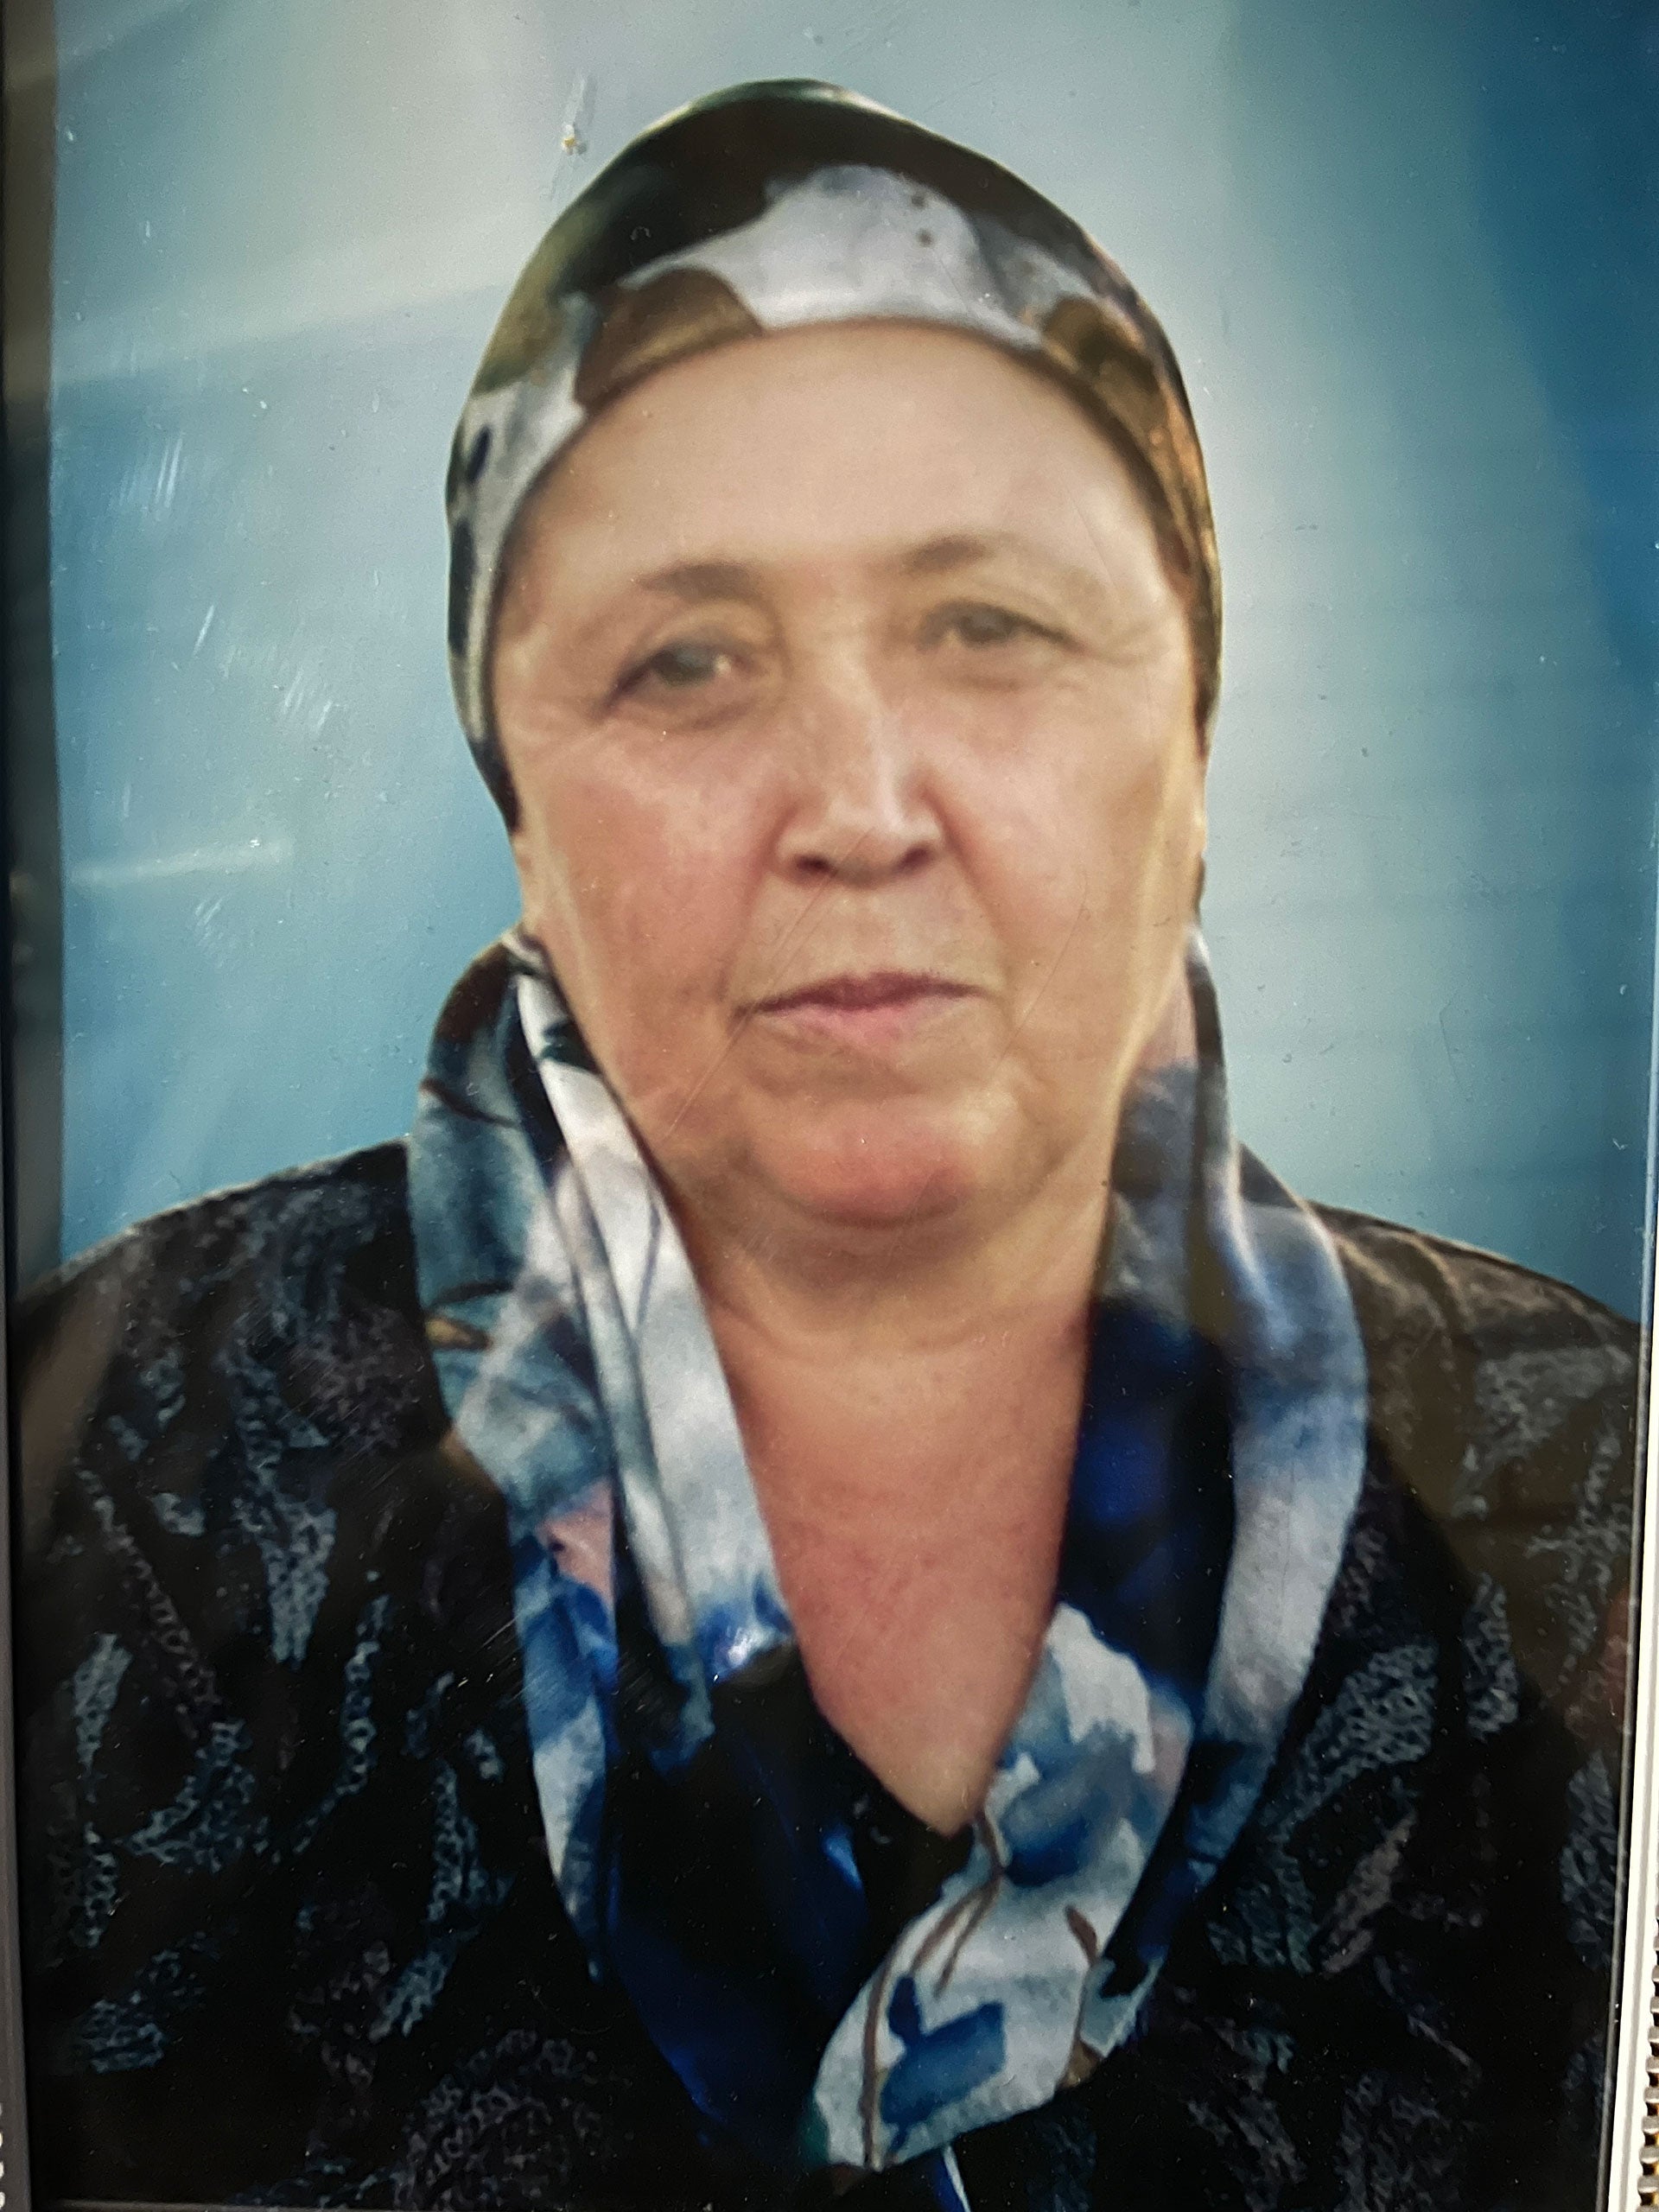 Савринисо Ходжибоева, 59 лет, гражданка Таджикистана, погибла 16 сентября 2022 г. в результате артобстрела ее дома в селении Хистеварз. Таджикистан. © Частное фото